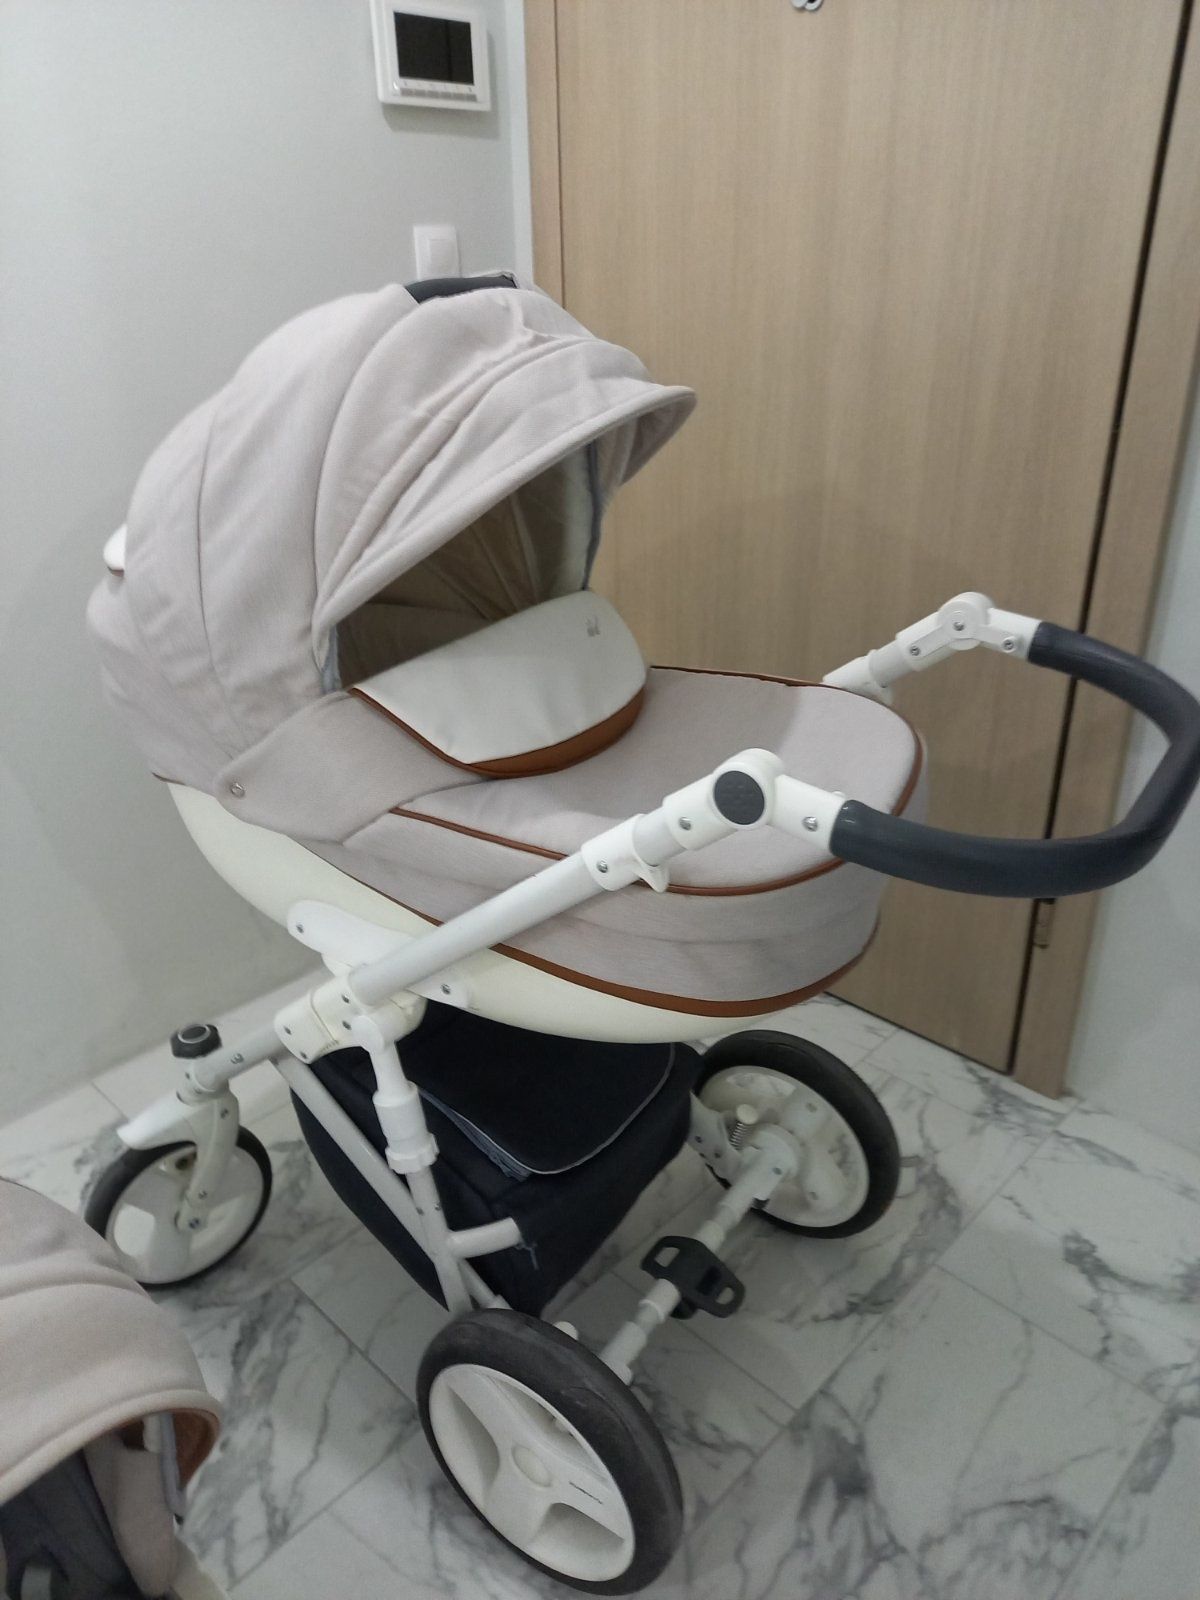 Детска количка Bexa Ideal